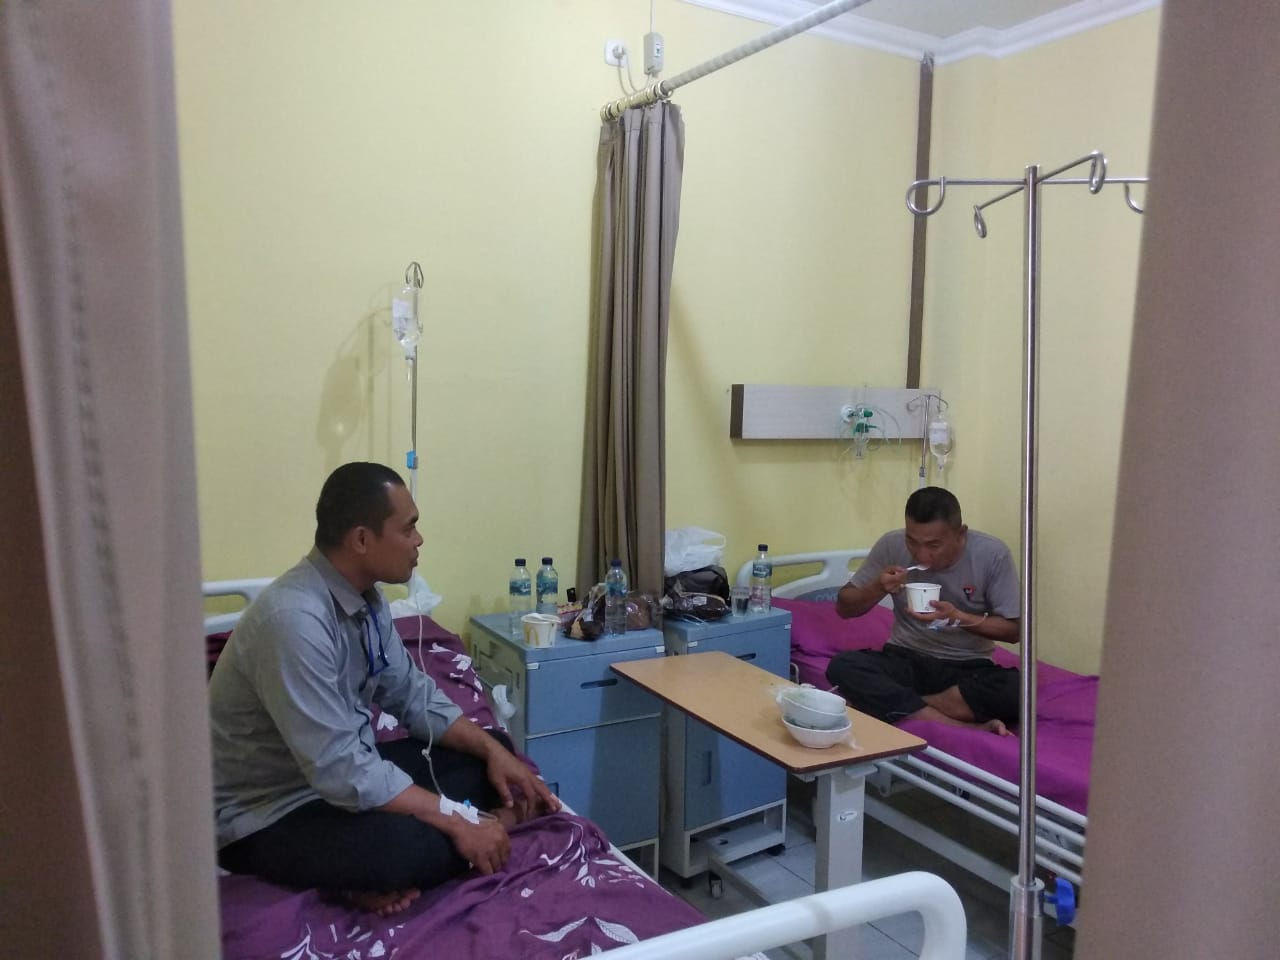 Siswa SPN Polda Lampung yang Keracunan Makanan Mulai Membaik